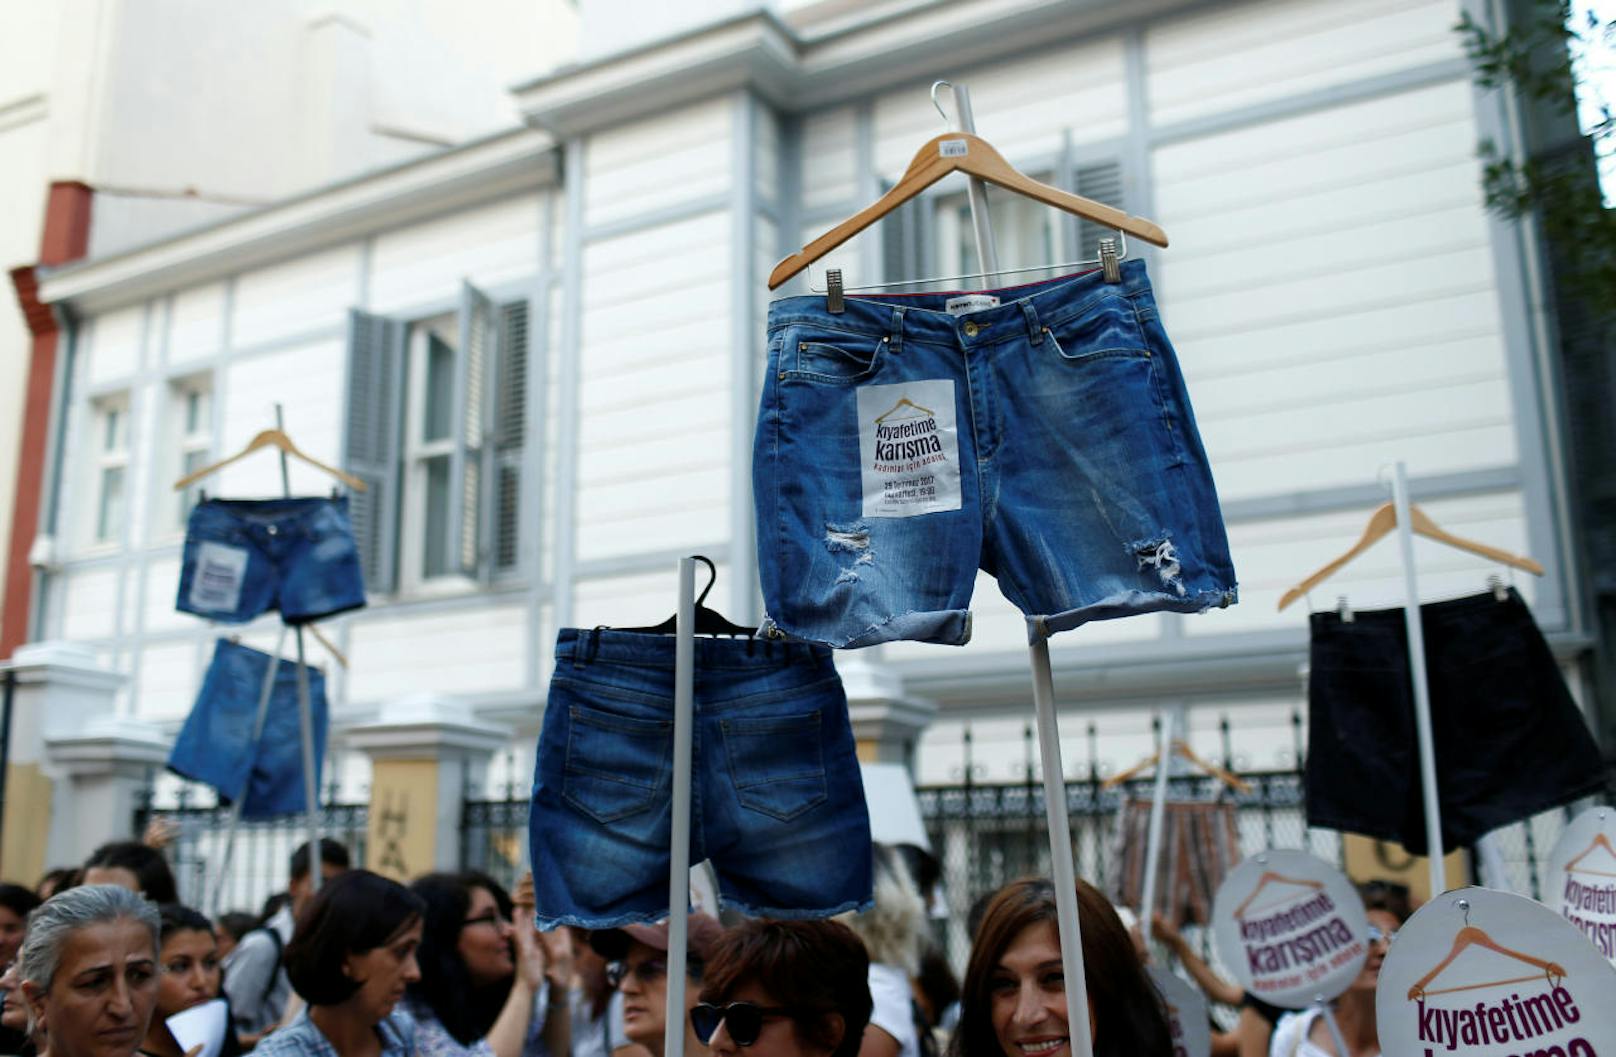 Türkische Frauen gehen für Minirock auf die Straße